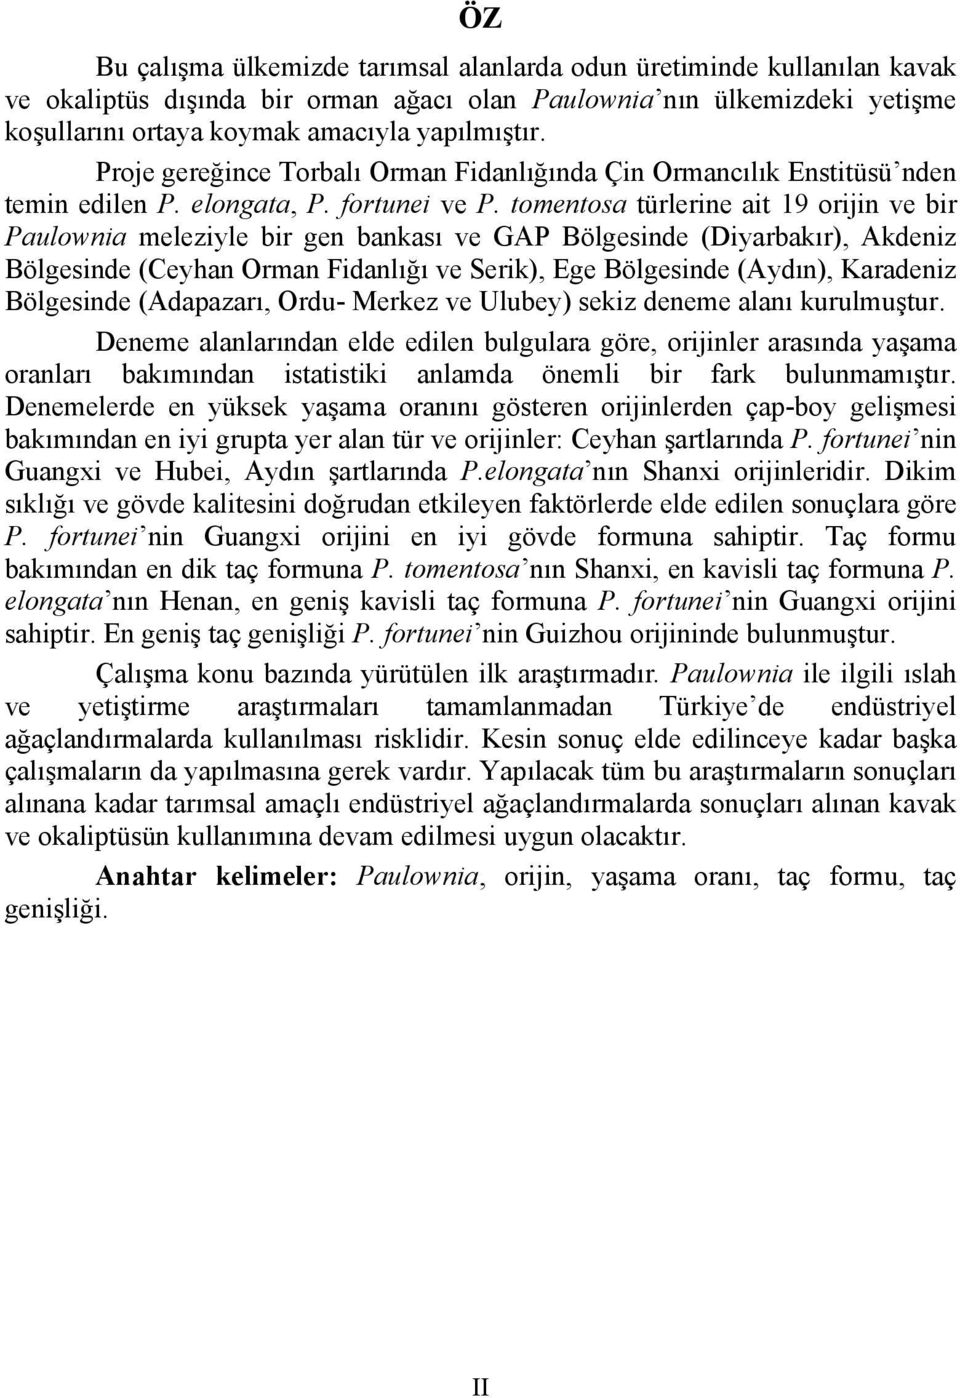 tomentosa türlerine ait 19 orijin ve bir Paulownia meleziyle bir gen bankası ve GAP Bölgesinde (Diyarbakır), Akdeniz Bölgesinde (Ceyhan Orman Fidanlığı ve Serik), Ege Bölgesinde (Aydın), Karadeniz